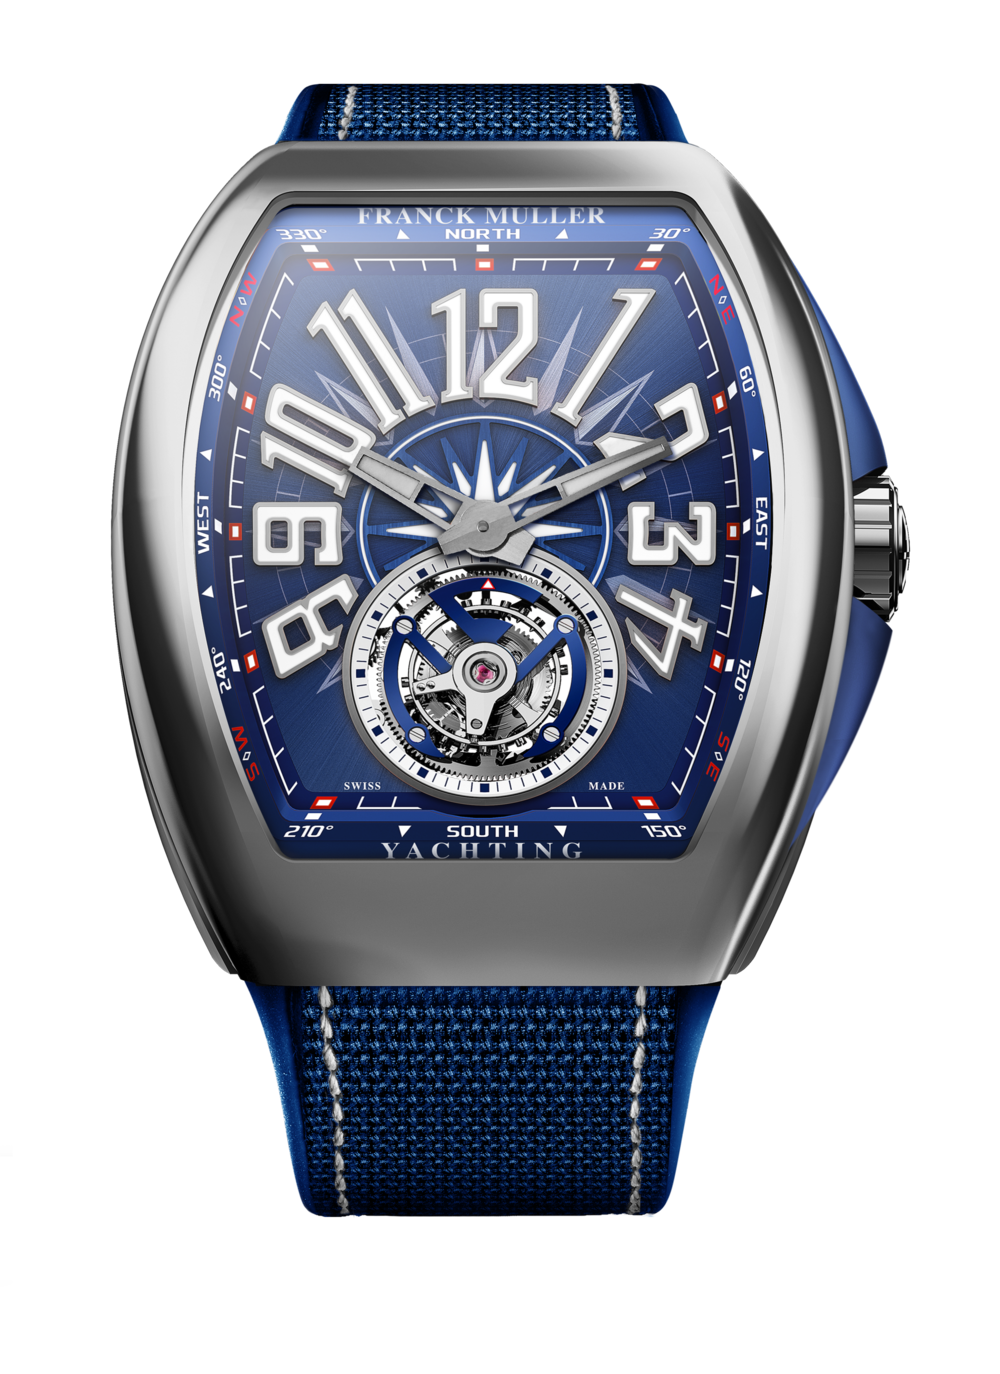 Franck Muller Franck Muller Tonokervex Worldwide USA 2852 Blue Dial Used Watches Men's